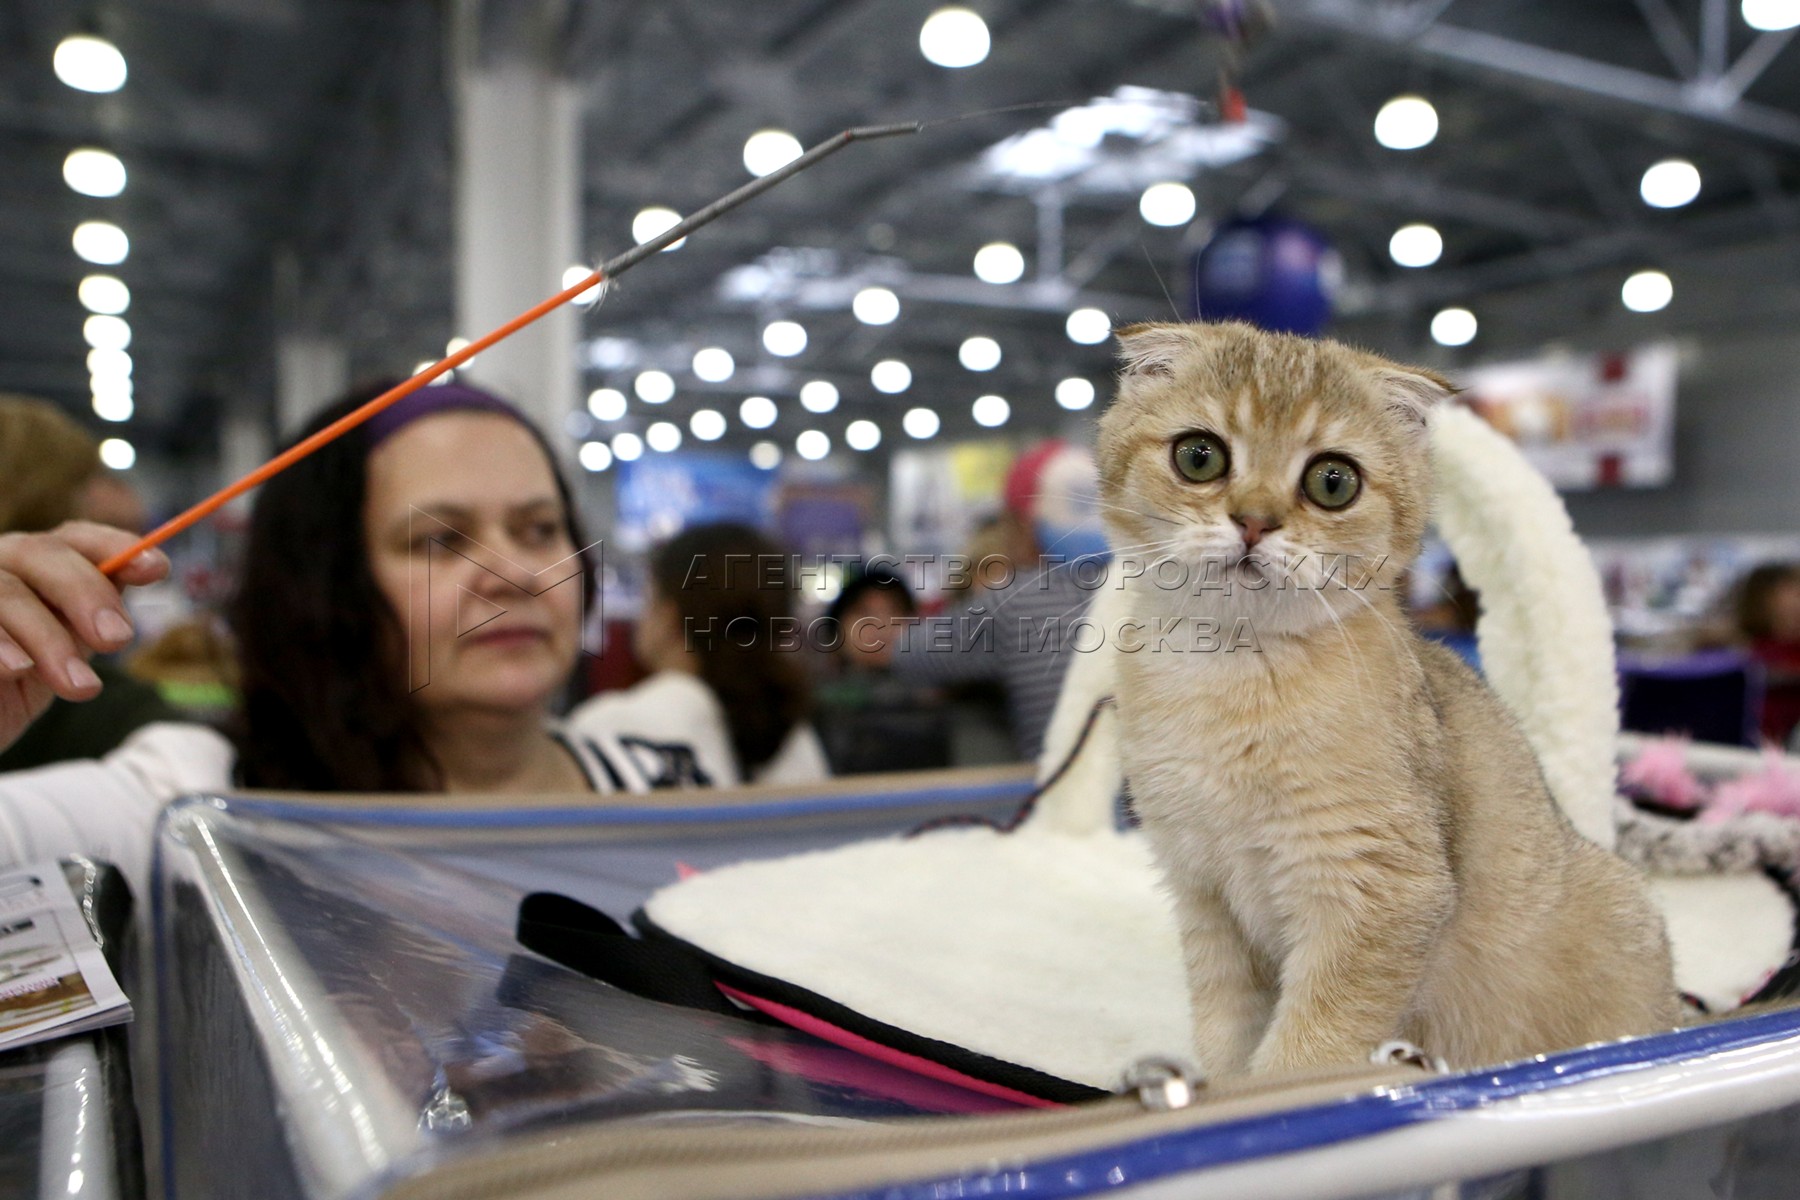 Крокус экспо выставка кошек. Запретили животных на выставках. Робот кошка на выставке в Экспо. Выставка кошек из России запрещена. Запретили выставки кошек фото.